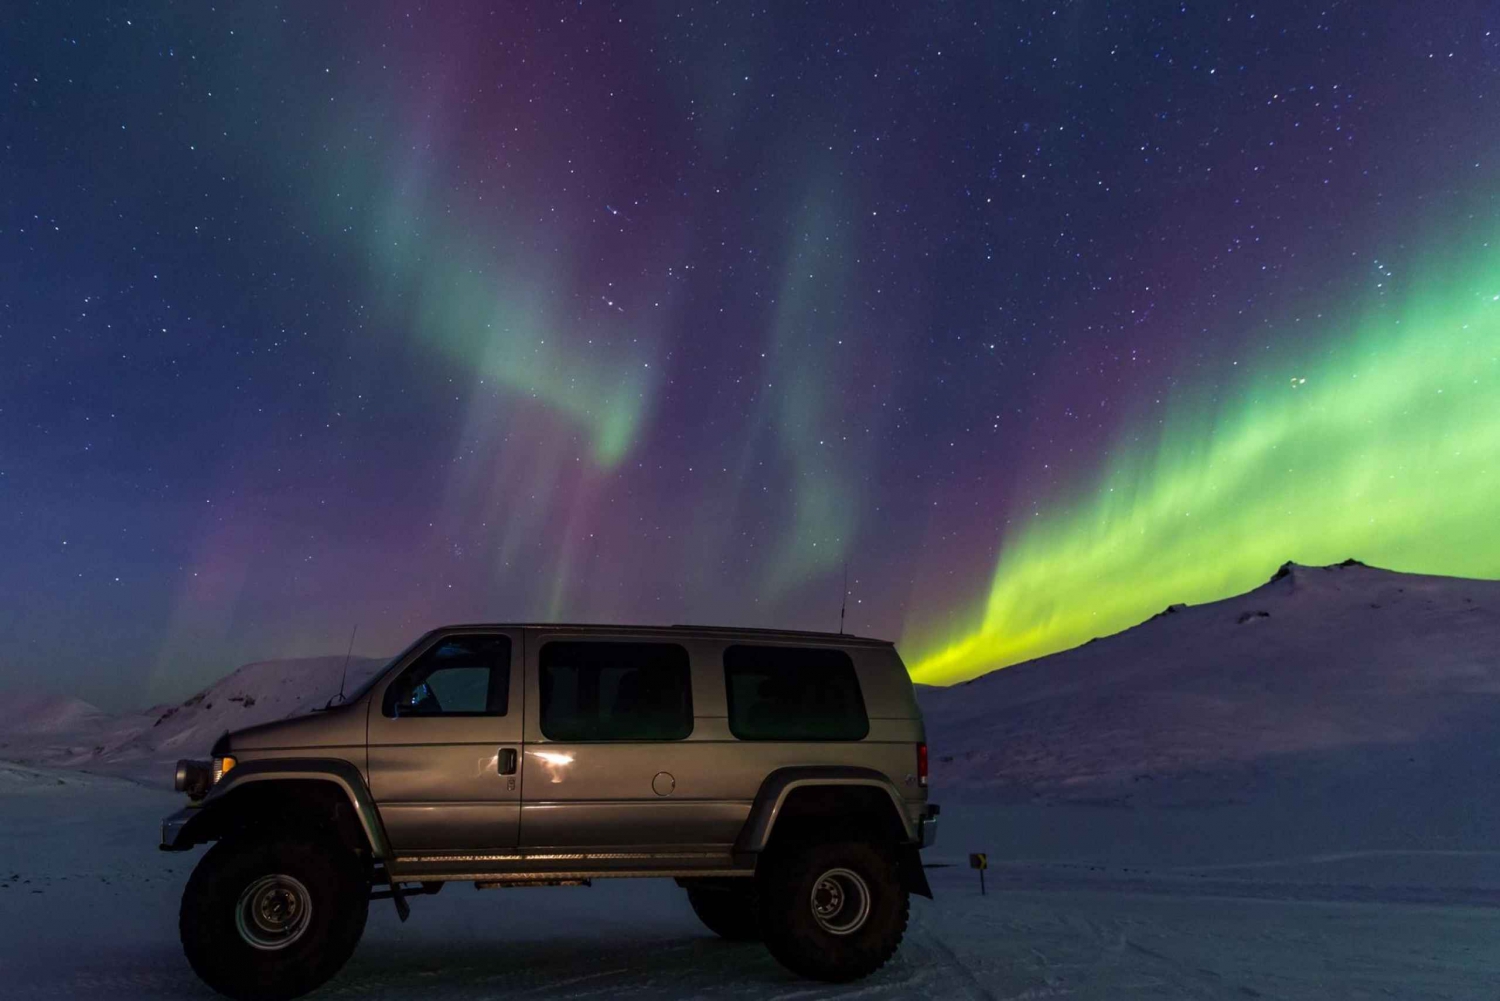 From Reykjavik: Northern Lights Hunt Super Jeep Tour